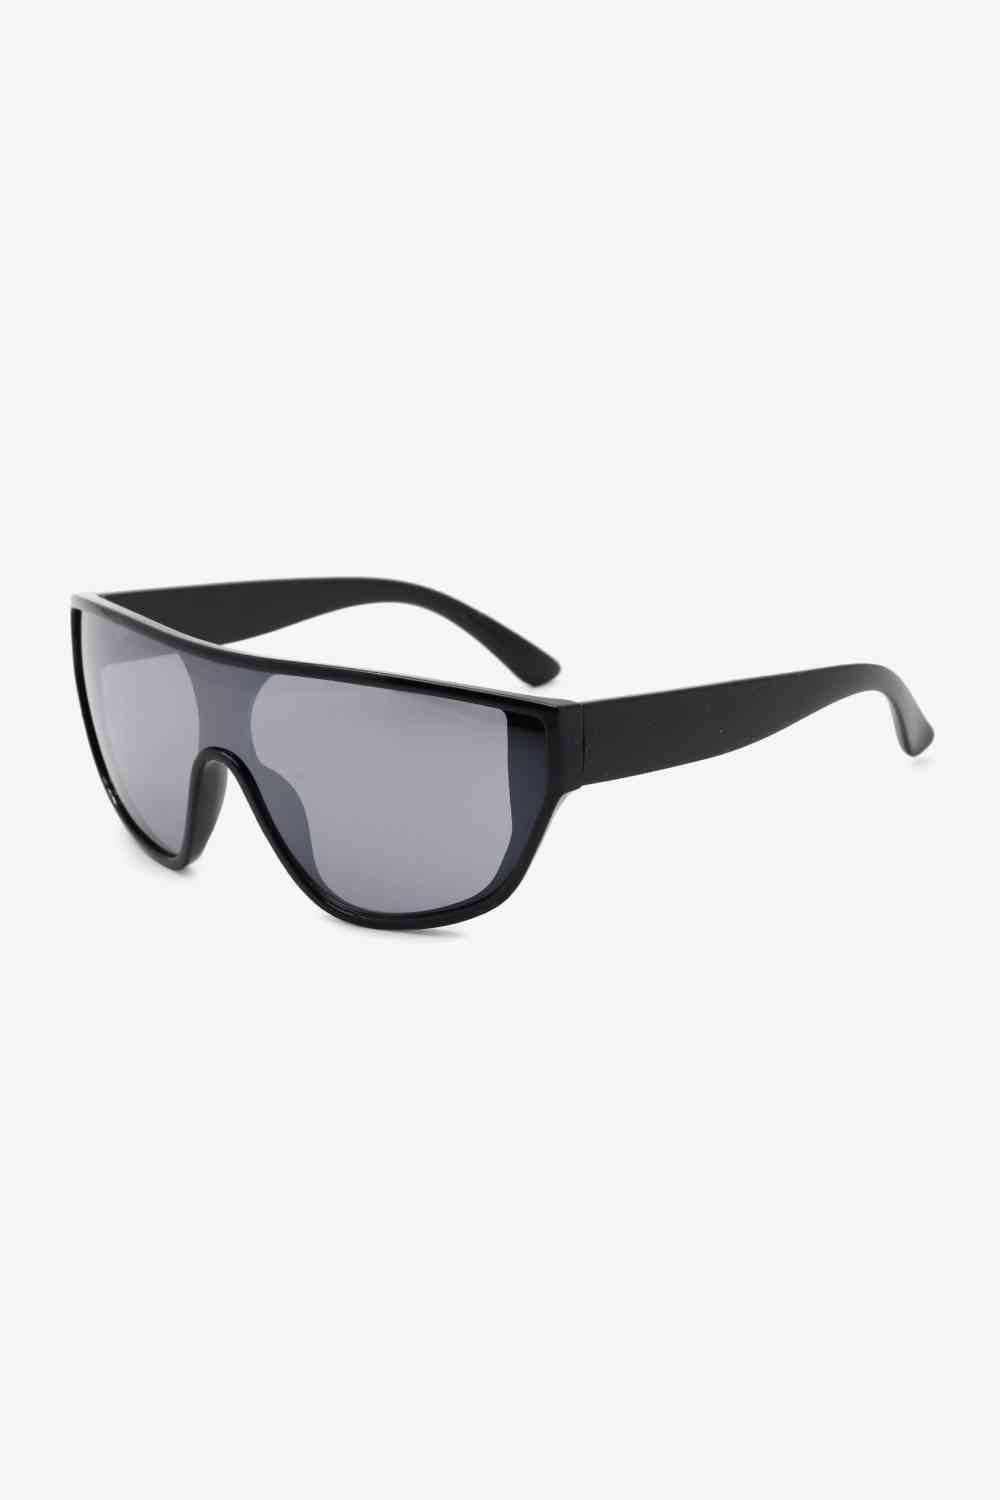 TEEK - Womens Wayfarer Sunglasses EYEGLASSES TEEK Trend Black  